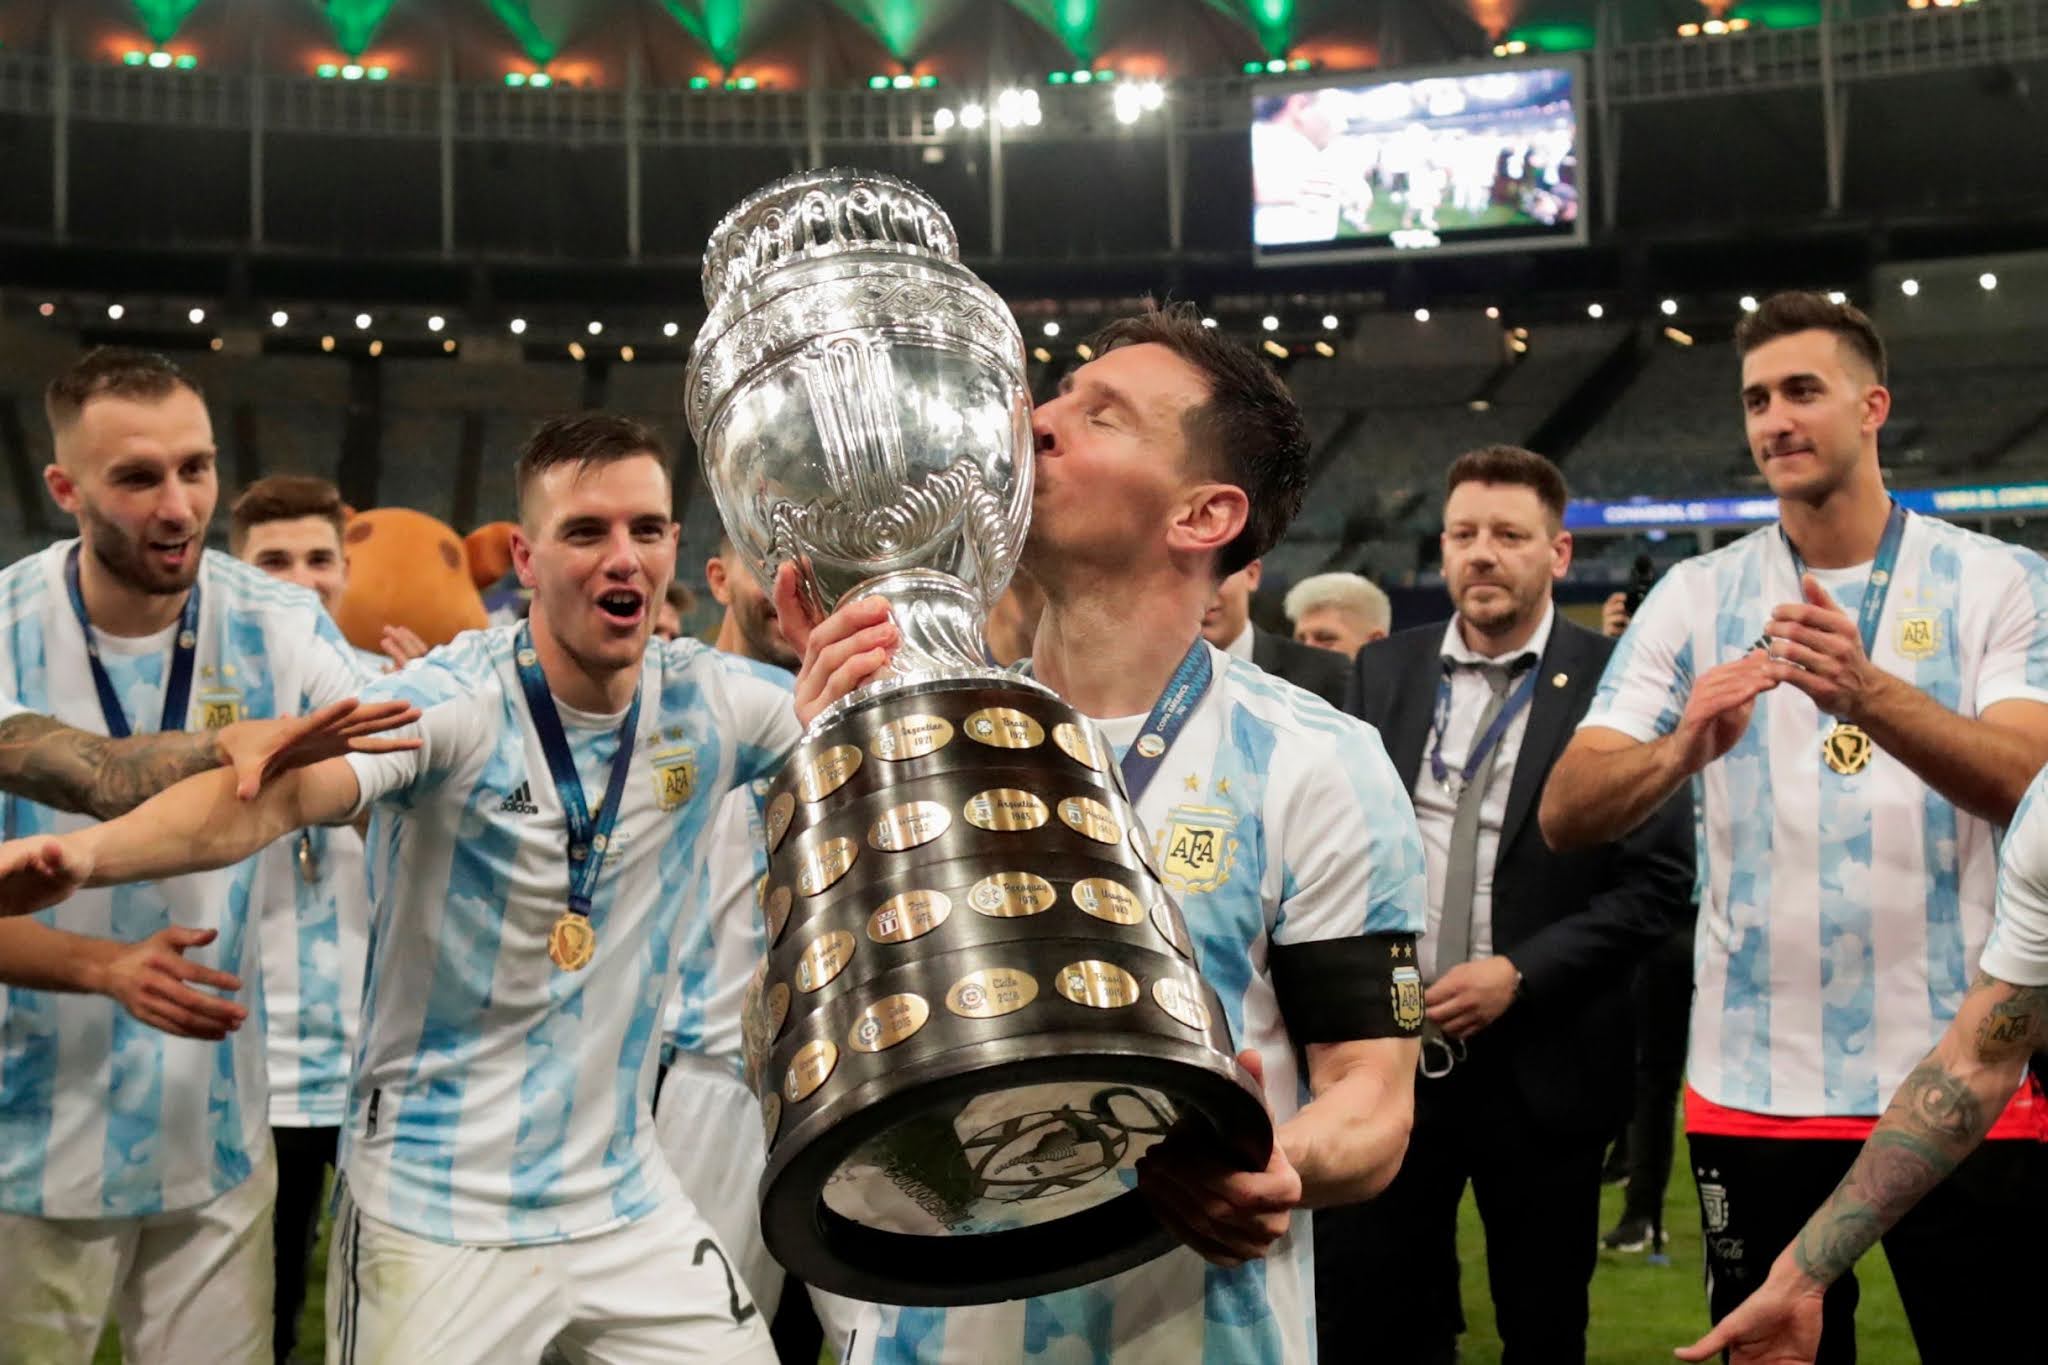 GALERIA DE FOTOS: Las mejores imágenes de Argentina campeón de la Copa América 2021 en el Maracaná